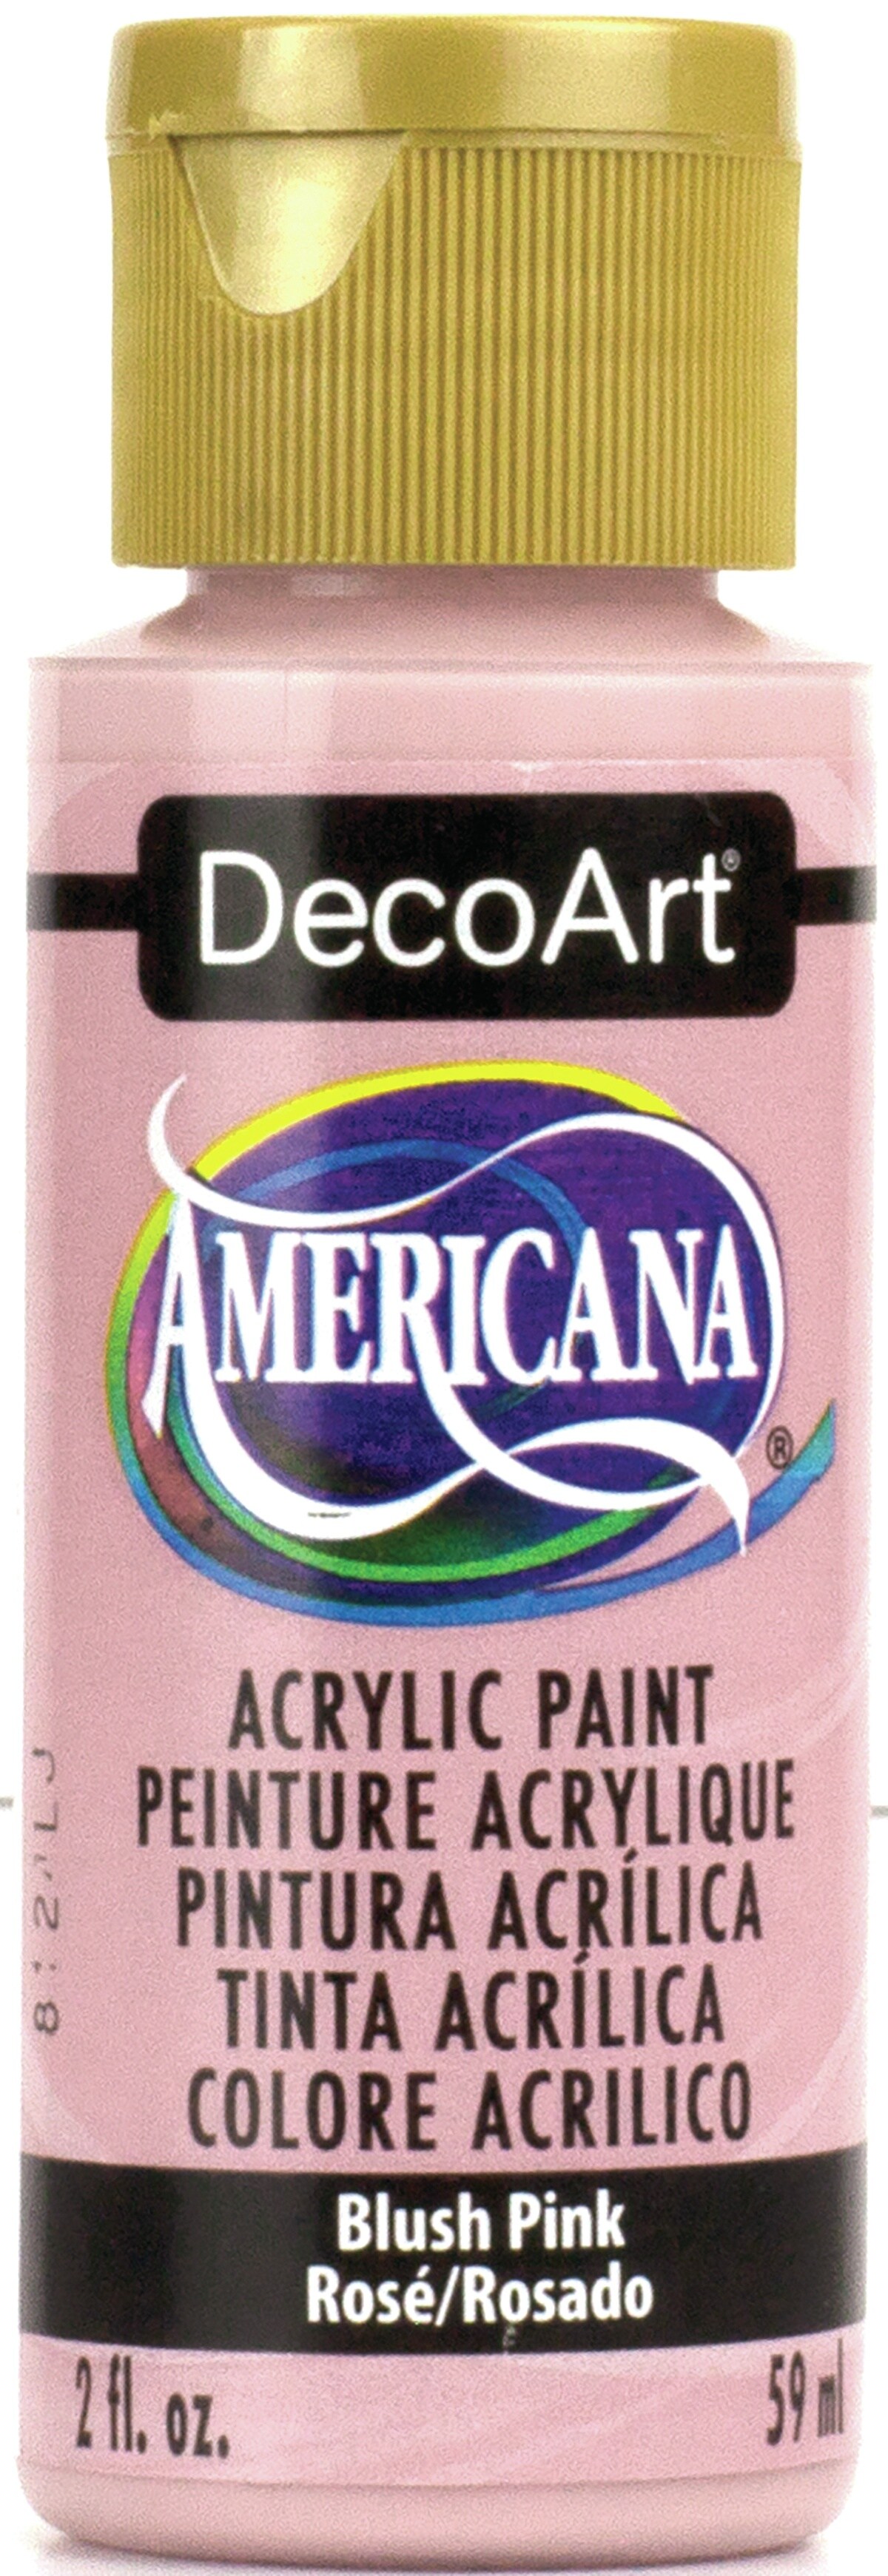 DecoArt Americana Acrylic Paint 2oz-Blush Pink